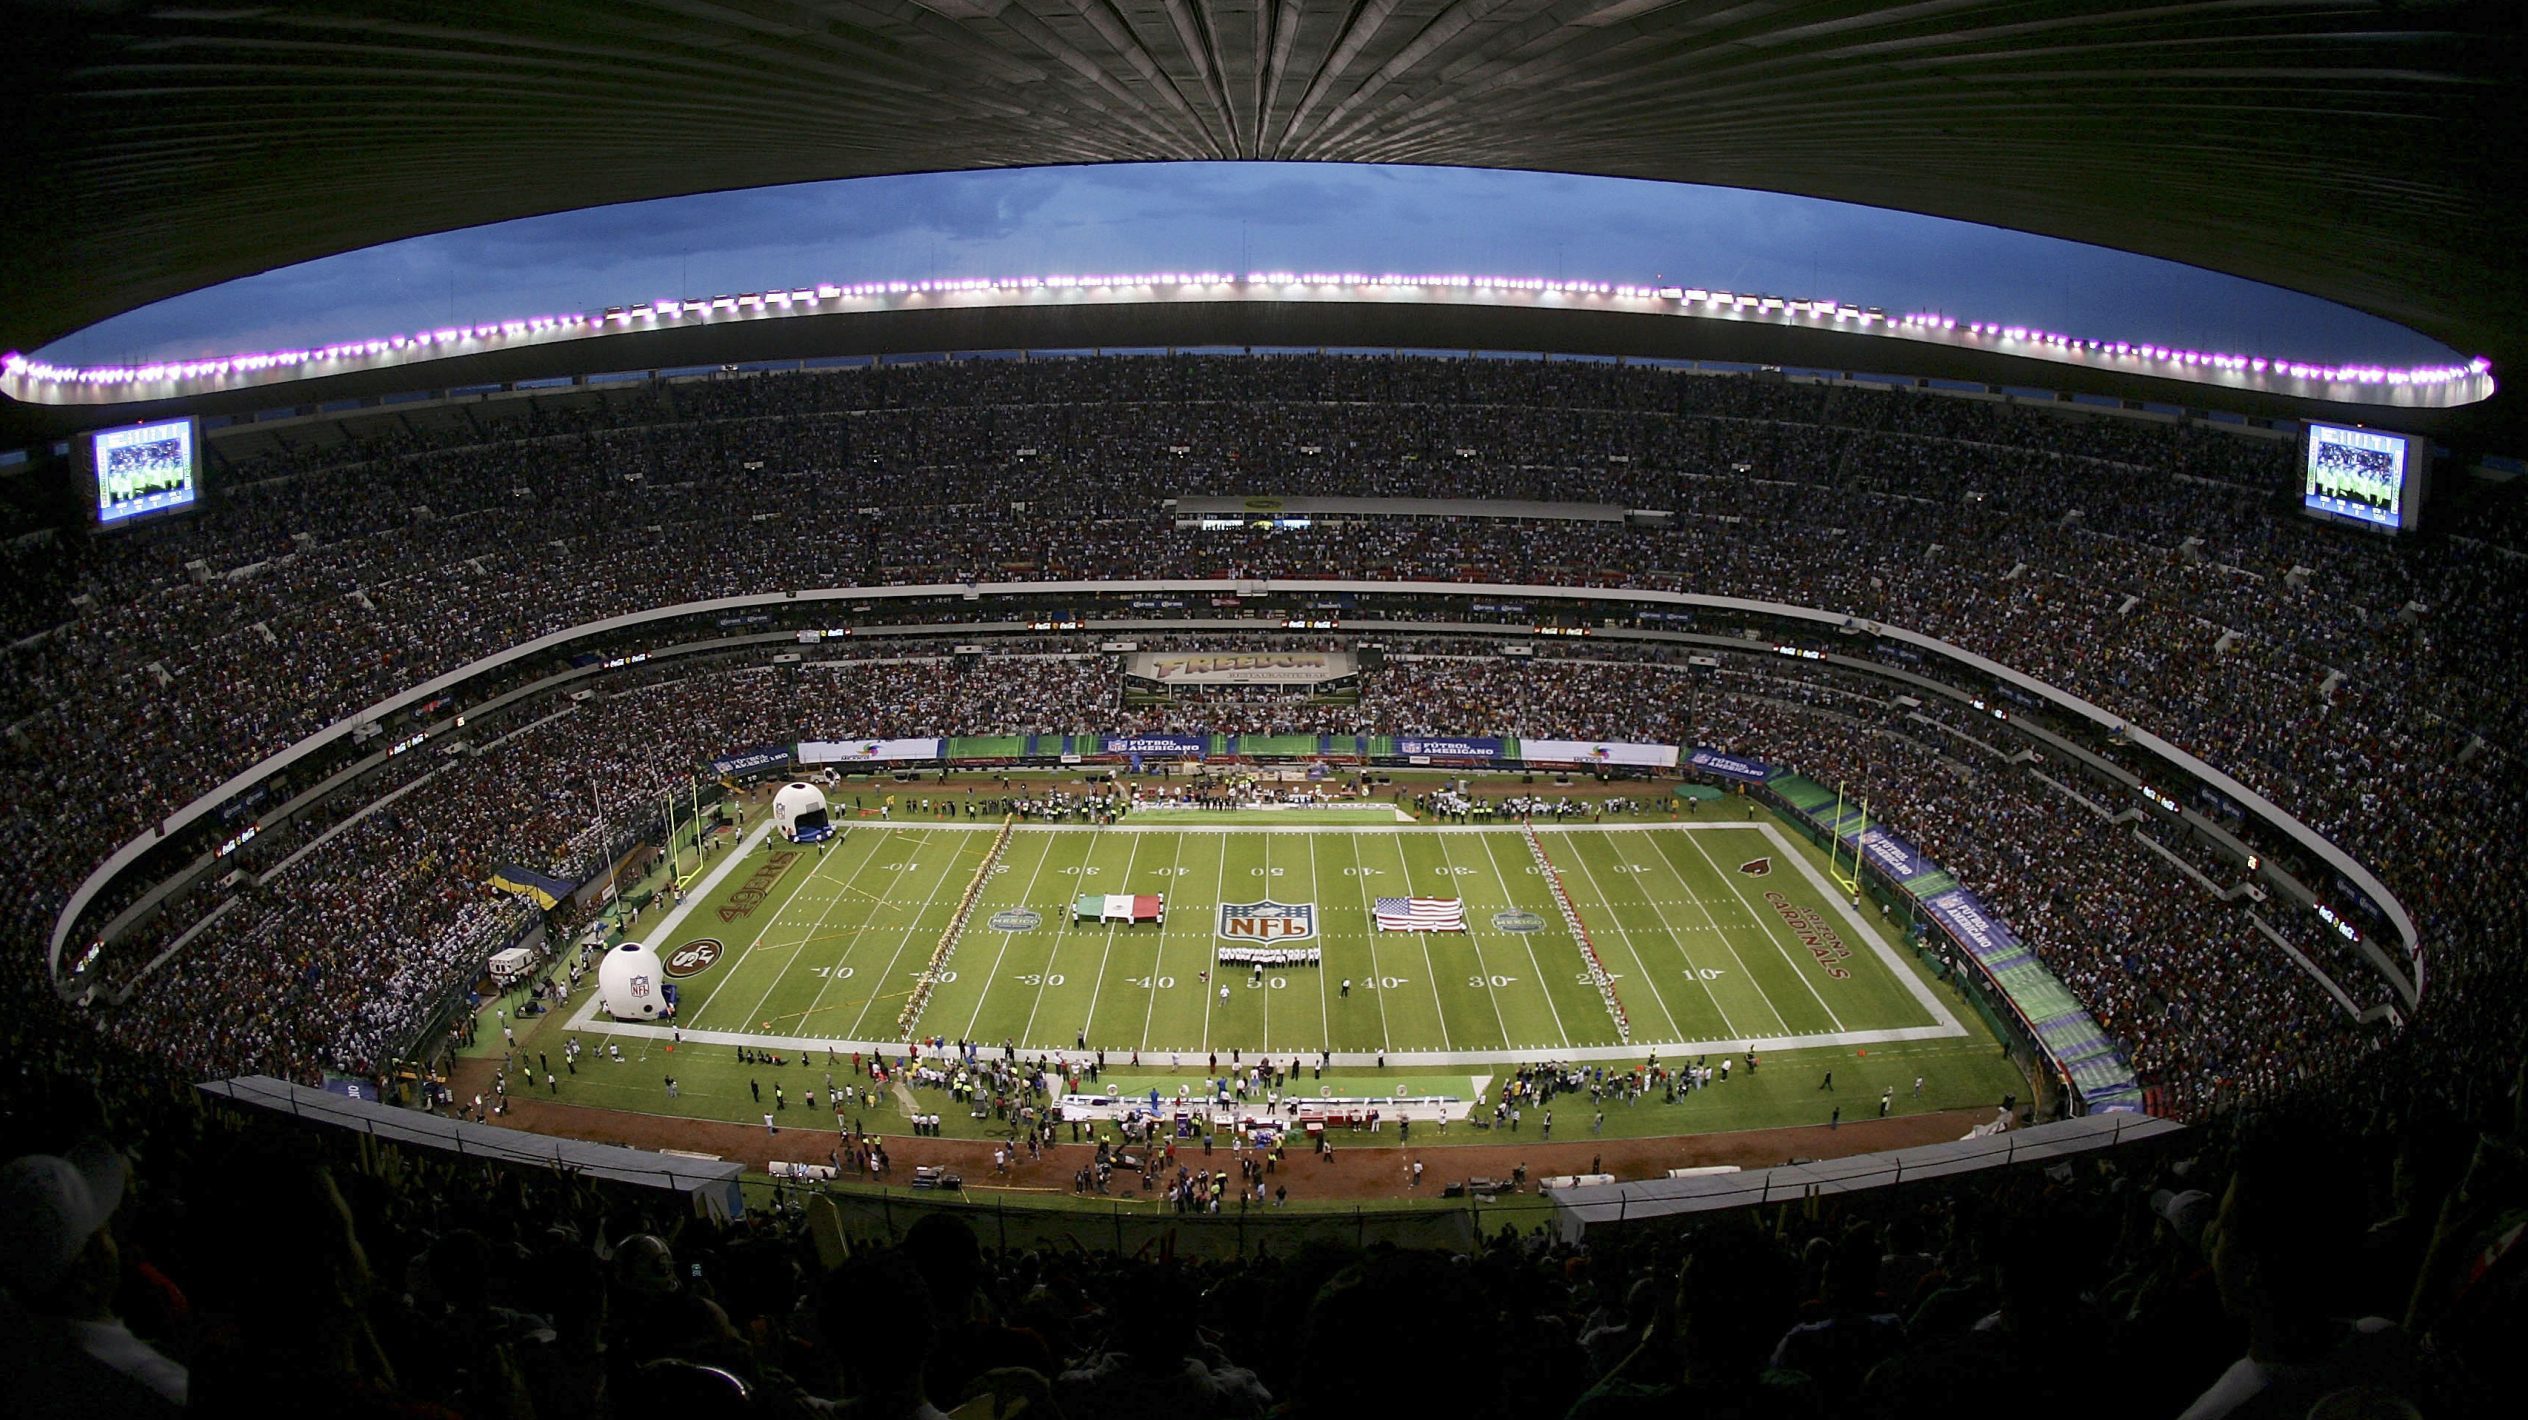 estadio azteca 49ers